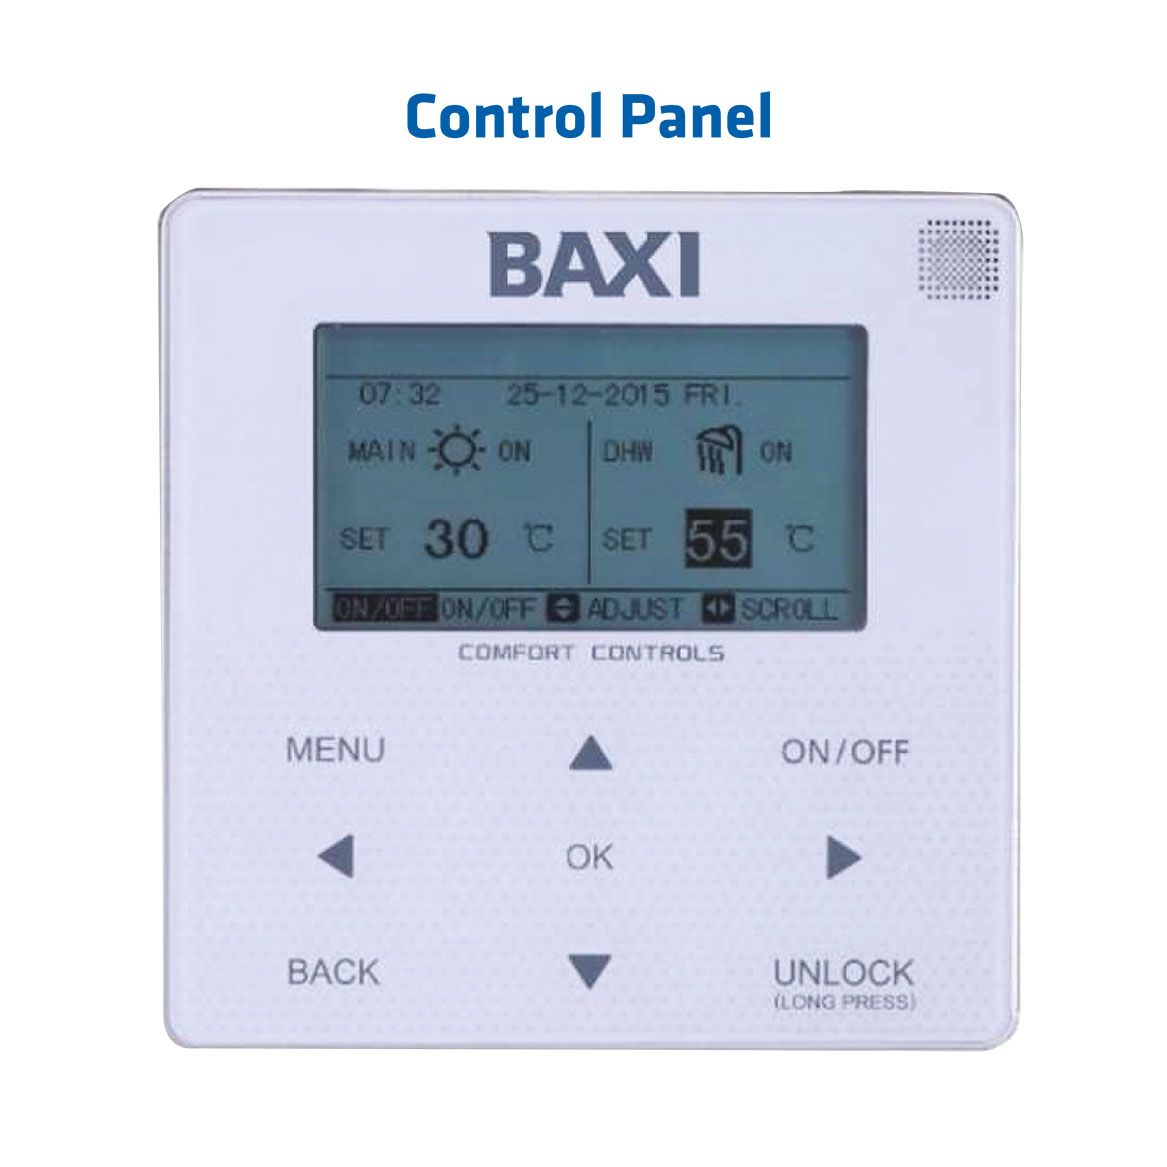 BAXI Auriga Heat Pumps Control Panel